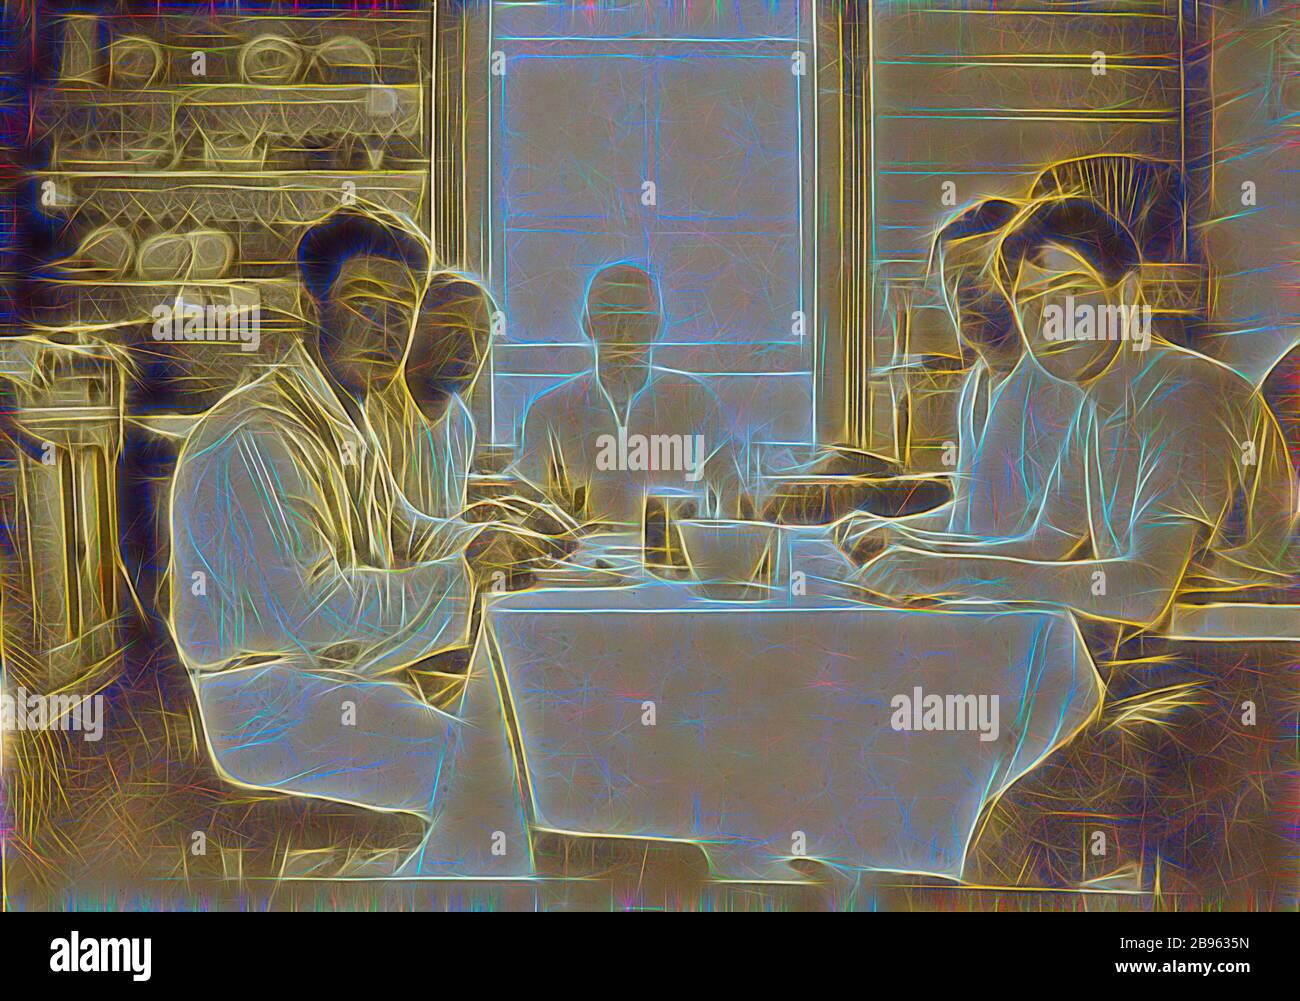 Digitalfoto - fünf Männer essen am Küchentisch, Chelsea, 1918, fünf junge Männer sitzen mit Messern und Gabeln in den Händen um einen Küchentisch. Sie tragen Hemden ohne Krawatten oder Westen. Direkt hinter dem Mann am Kopf des Tisches befindet sich ein Fenster. Dieses Foto zeigt Walter Burke als jungen Mann, weg an einem Wochenende mit einer Gruppe von Freunden namens "Bunyips" in Chelsea, Dezember 1918., von Gibon neu gestaltet, Design von warmen fröhlich glühen von Helligkeit und Lichtstrahlen Ausstrahlung. Klassische Kunst neu erfunden mit einem modernen Twist. Fotografie inspiriert von Futurismus, umarmt dyna Stockfoto